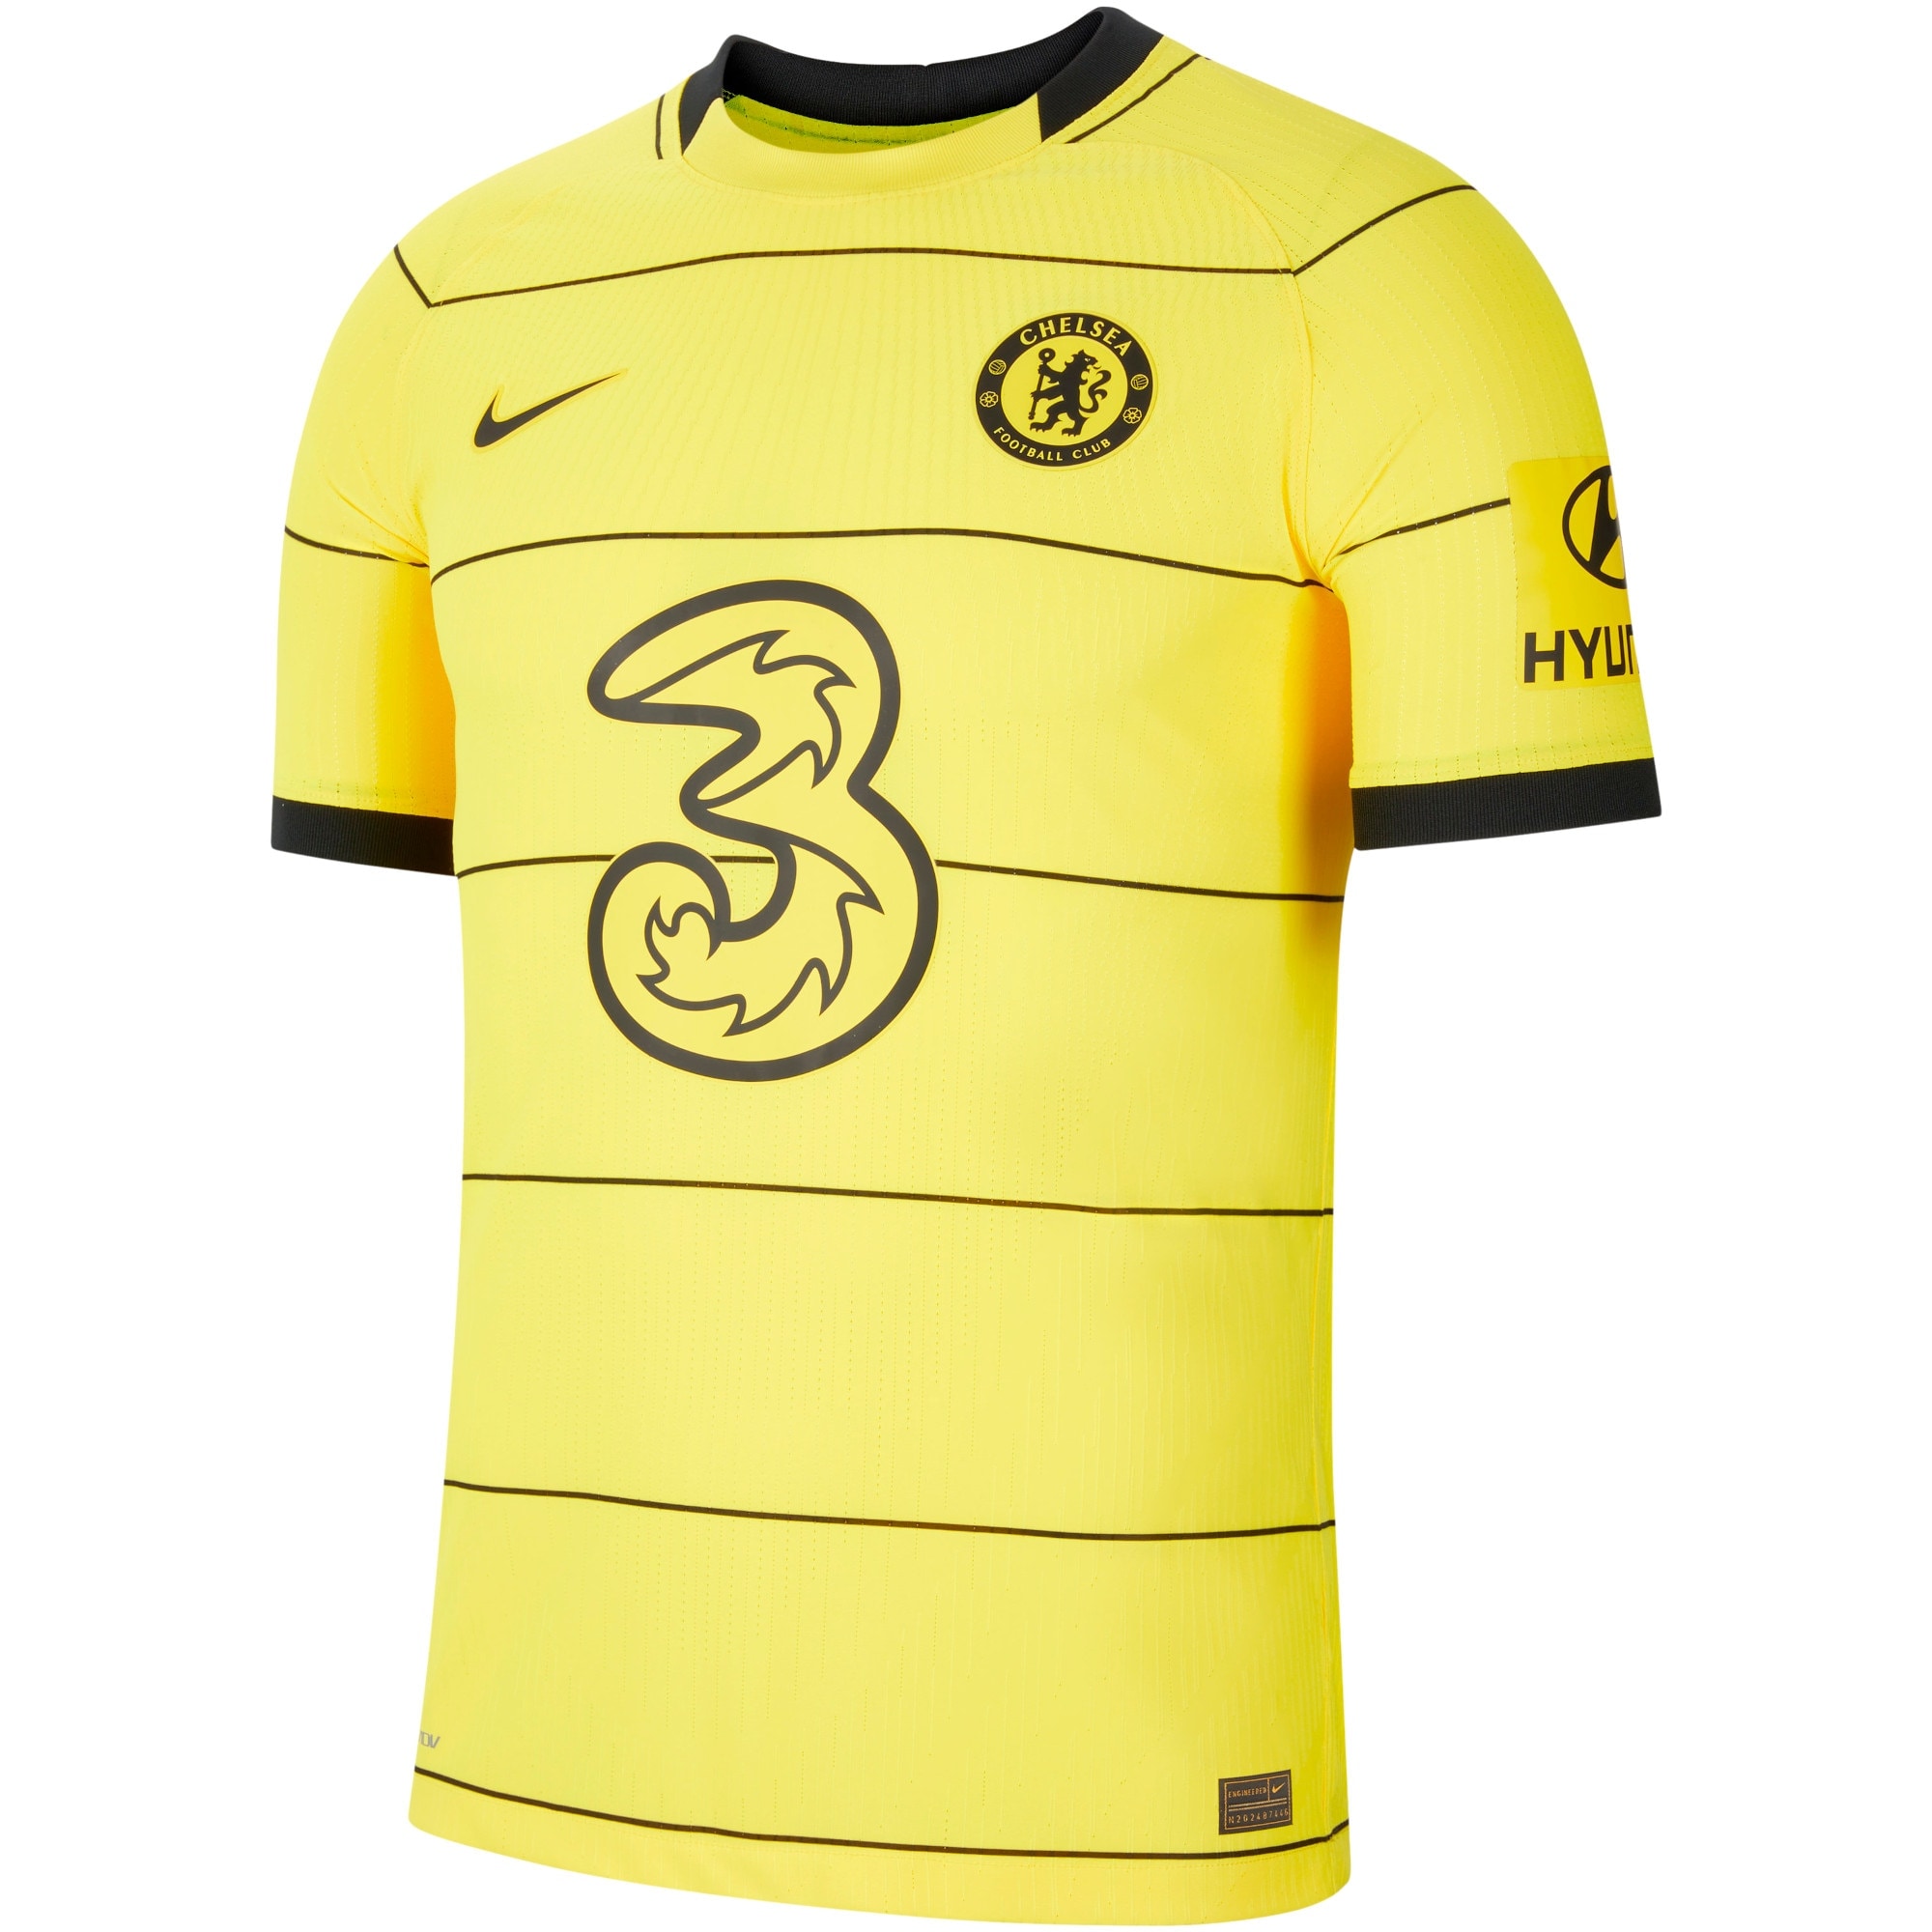 Chelsea Away Vapor Match Shirt 2021-22 with Kanté 7 printing